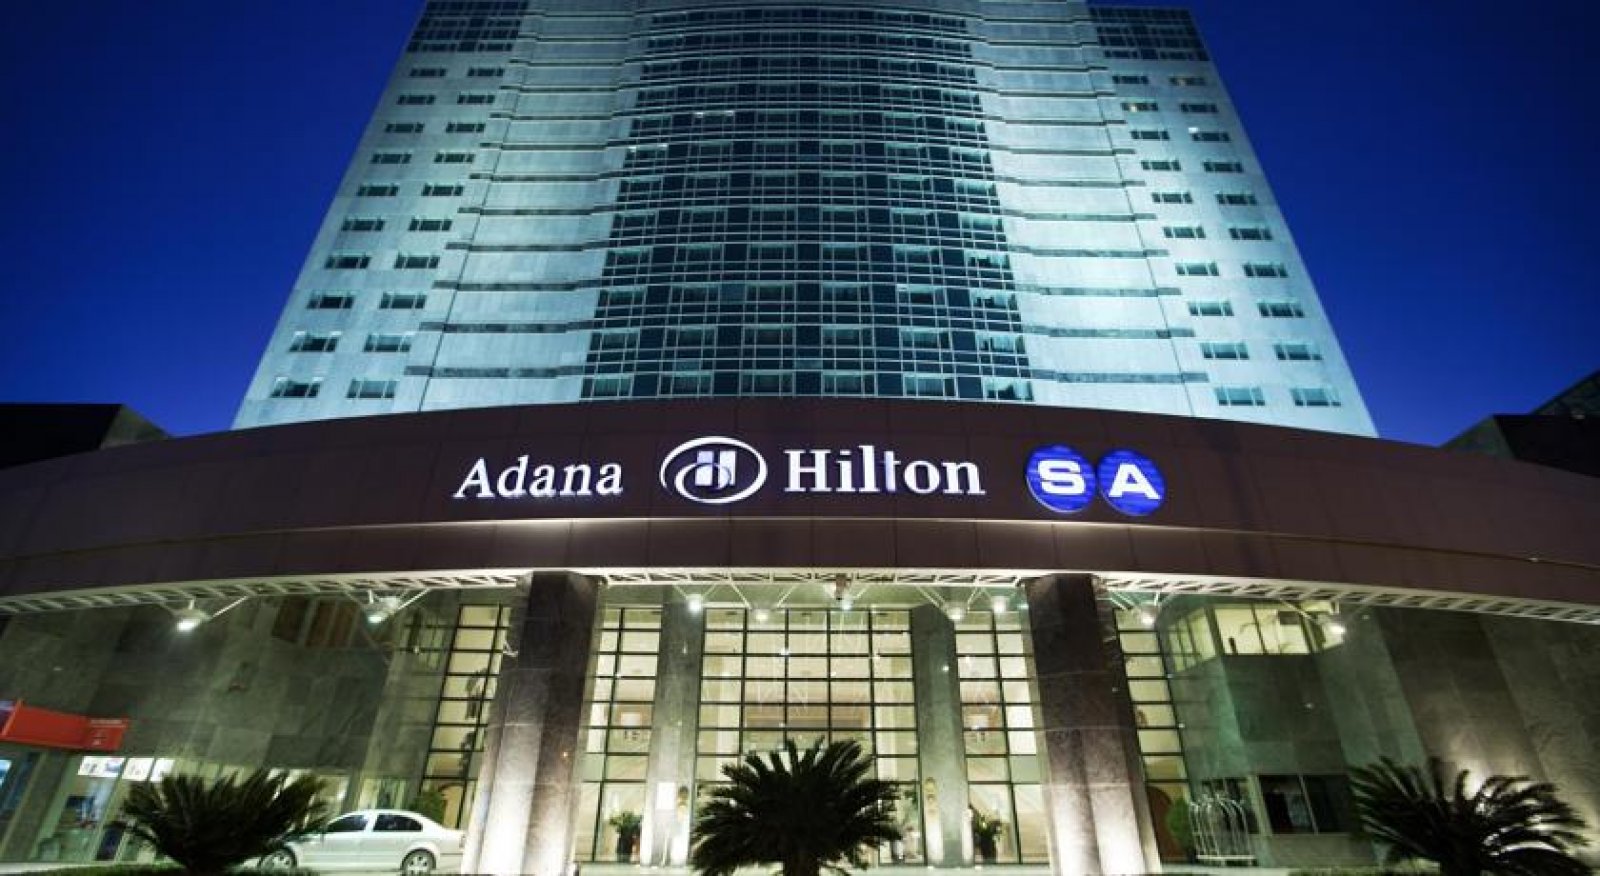 HiltonSA Hotels